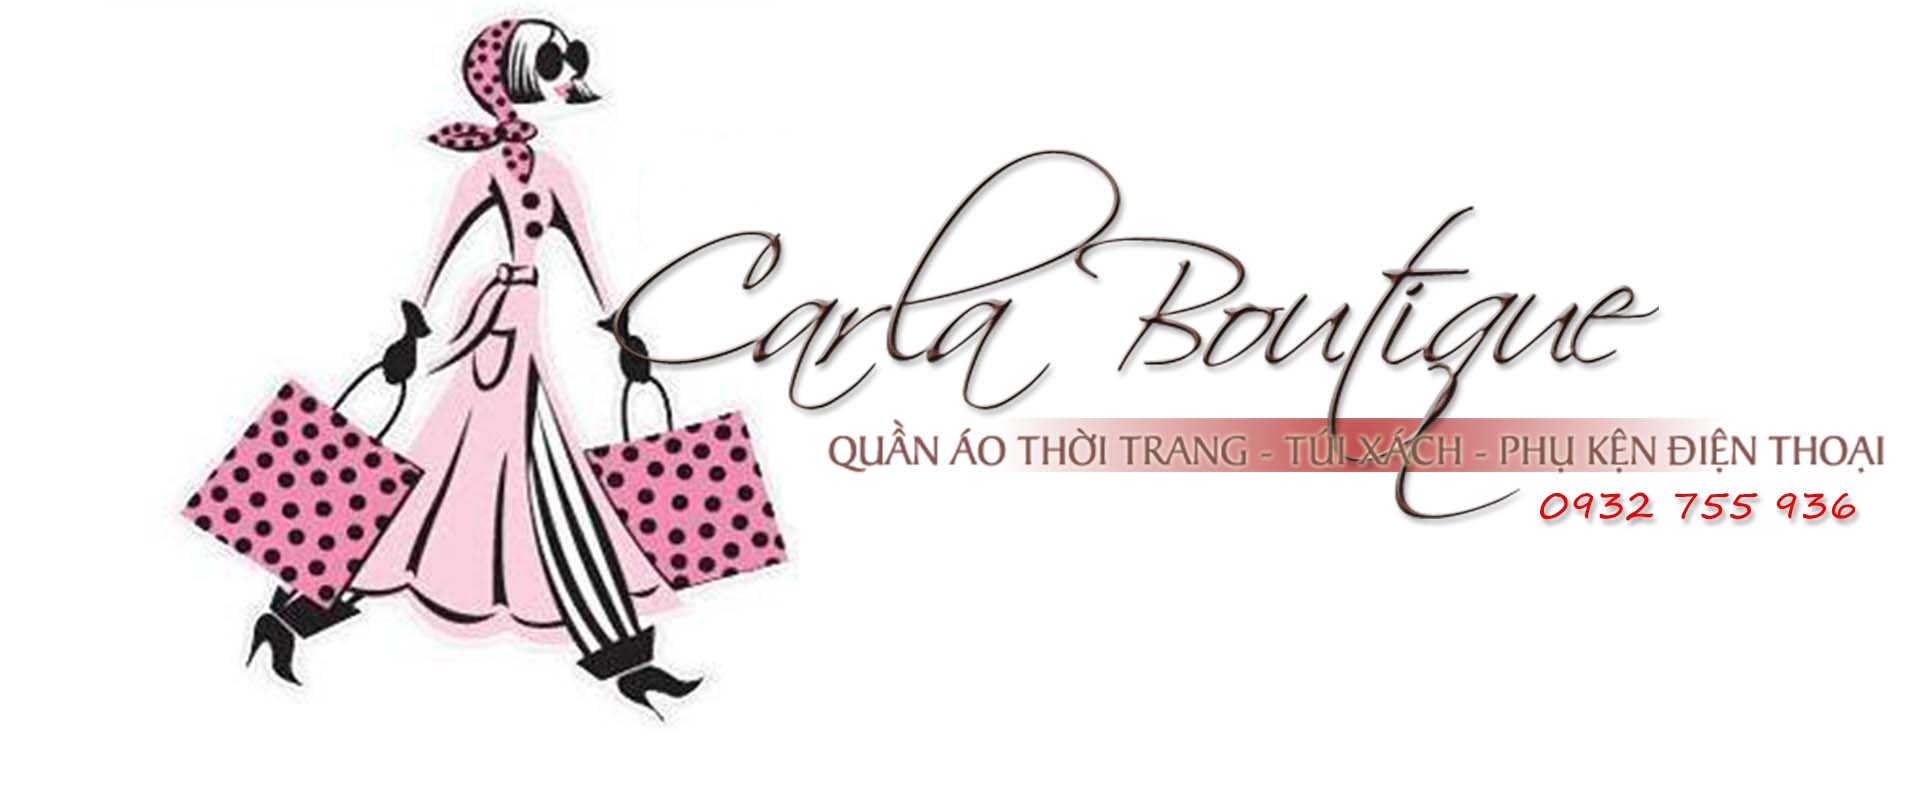 Carla Boutique